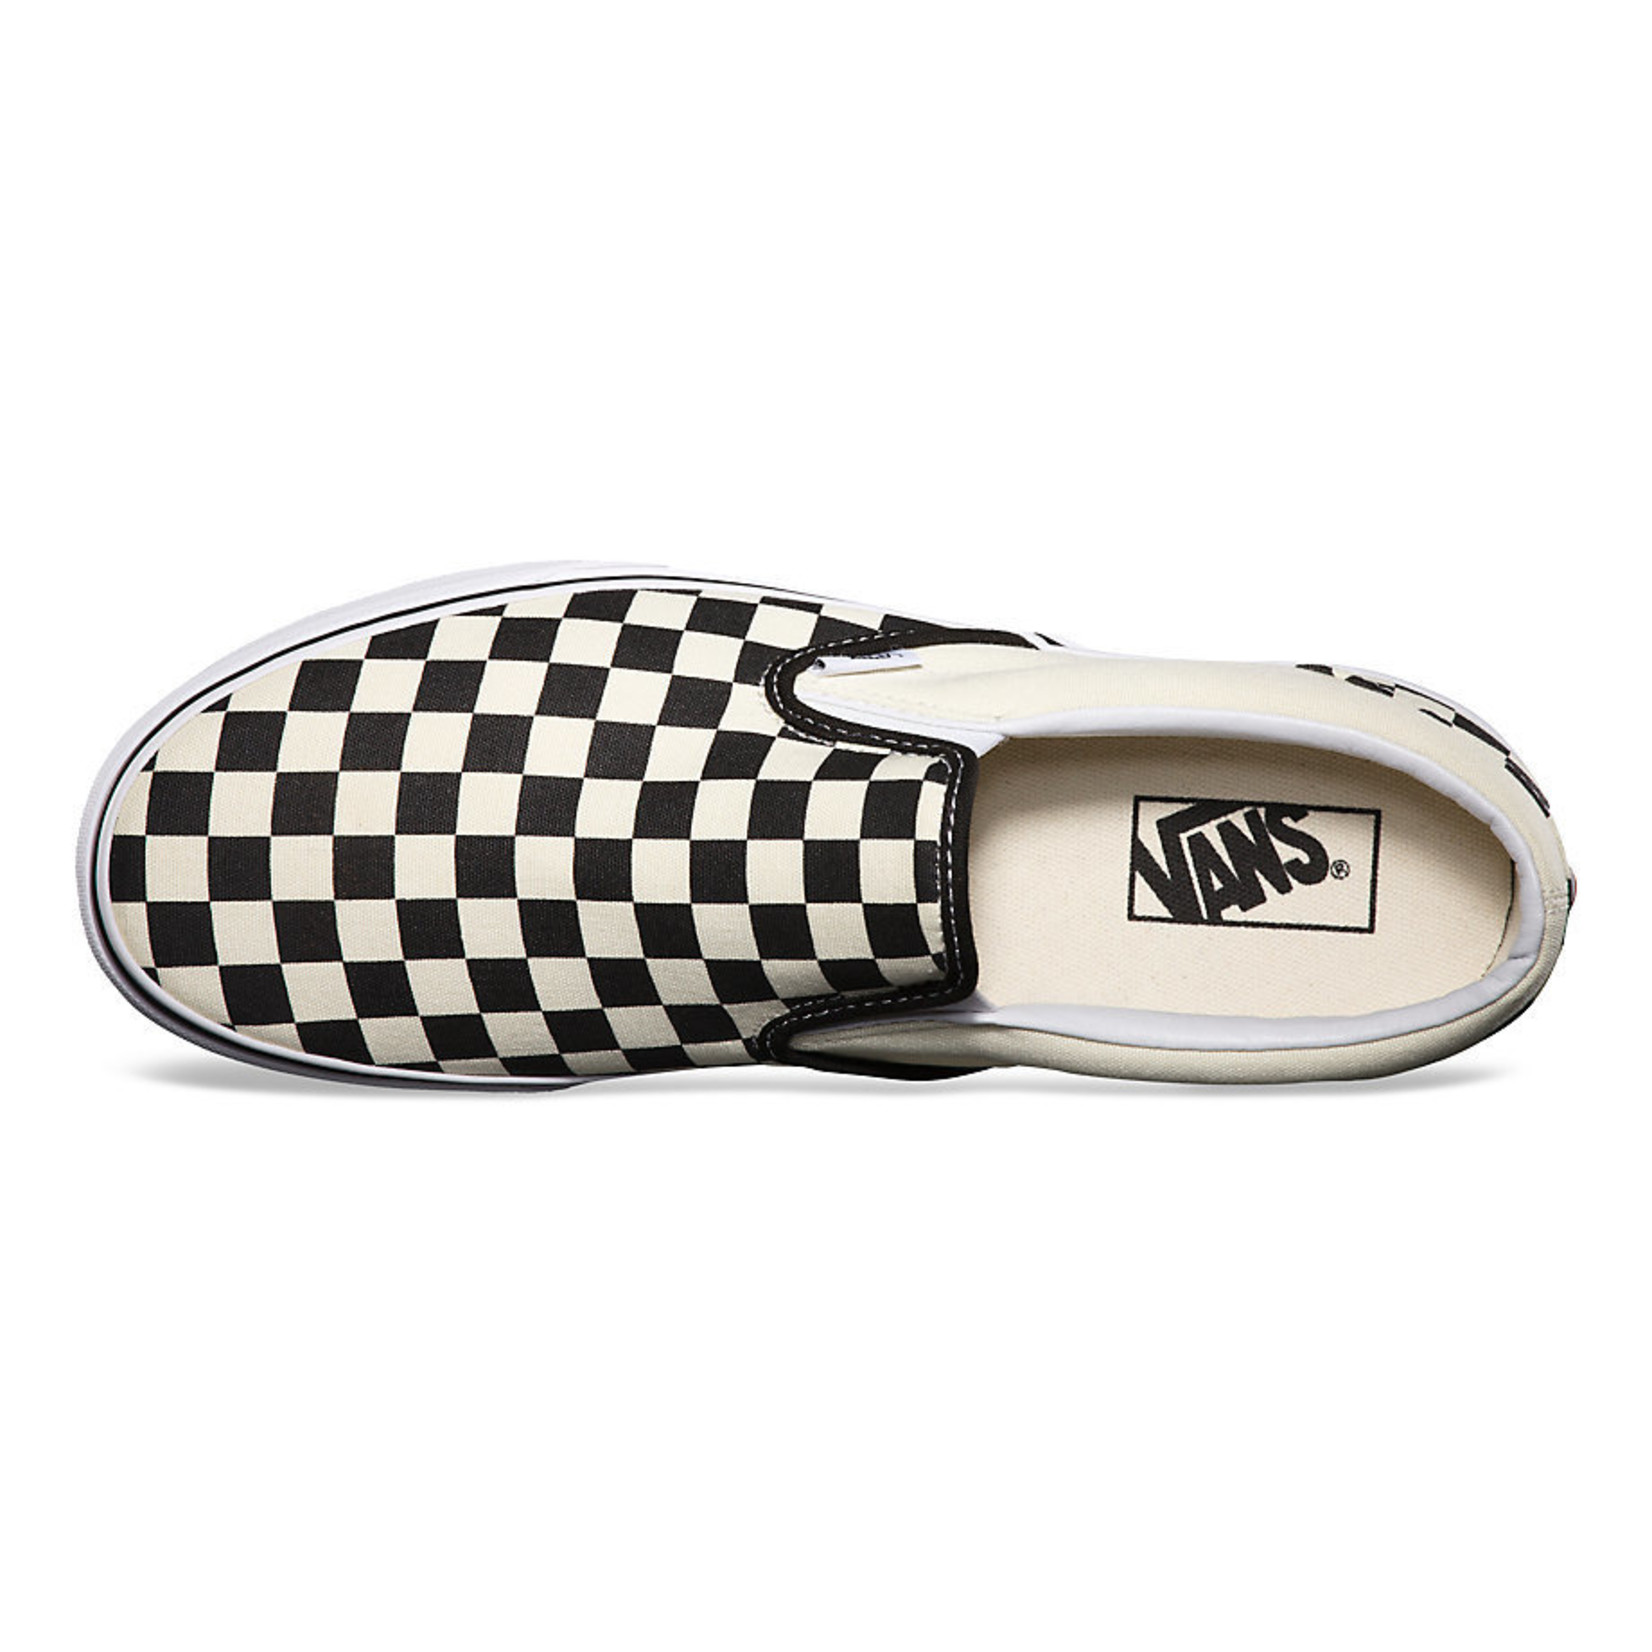 Vans Vans Slip On Pro Skate Shoes - Black/Off White Check -